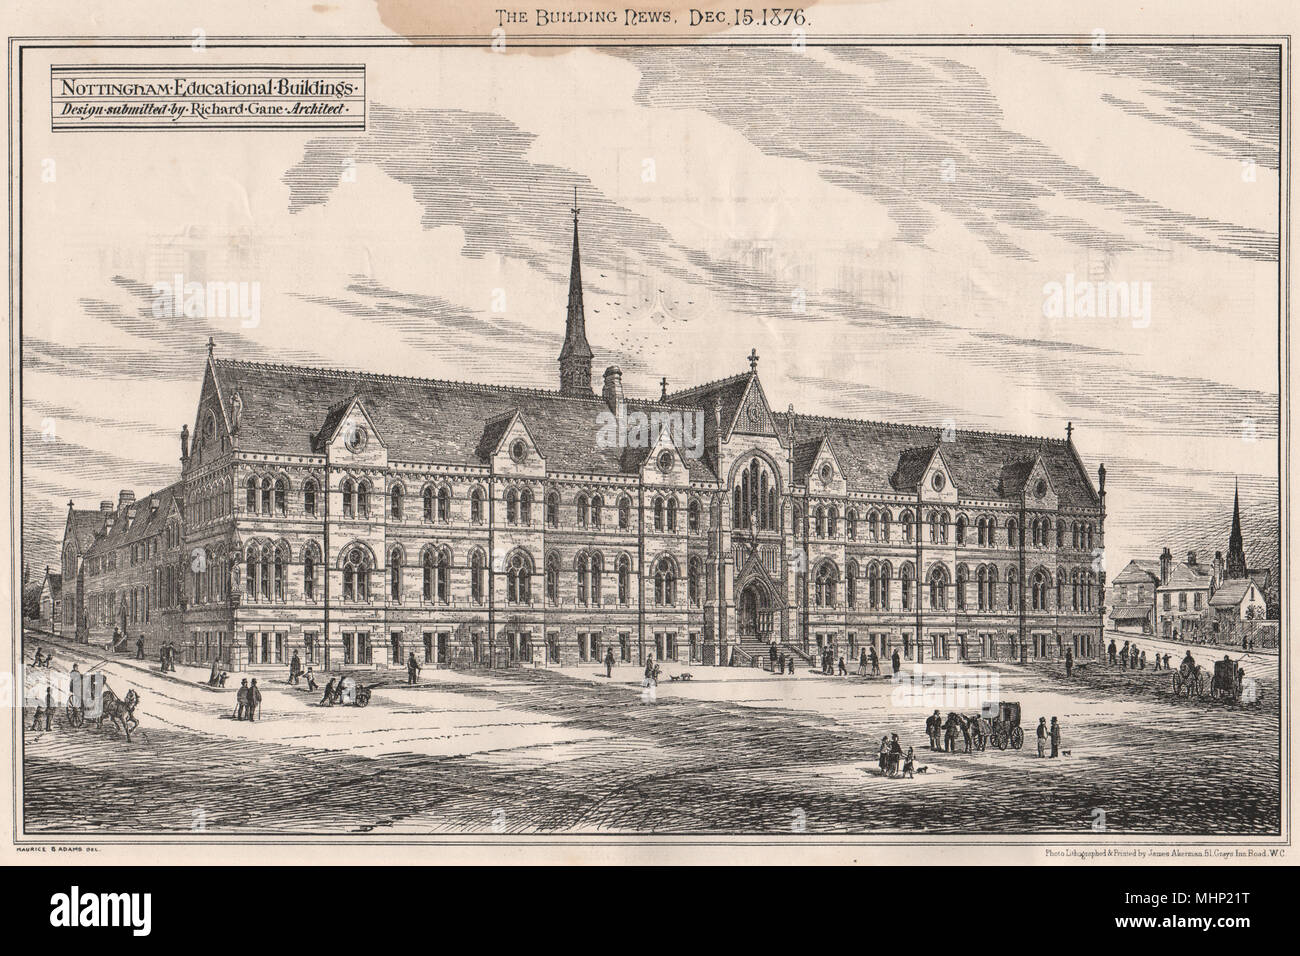 Nottingham Bildungseinrichtungen; Design von Richard Gane Archt 1876 eingereicht Stockfoto